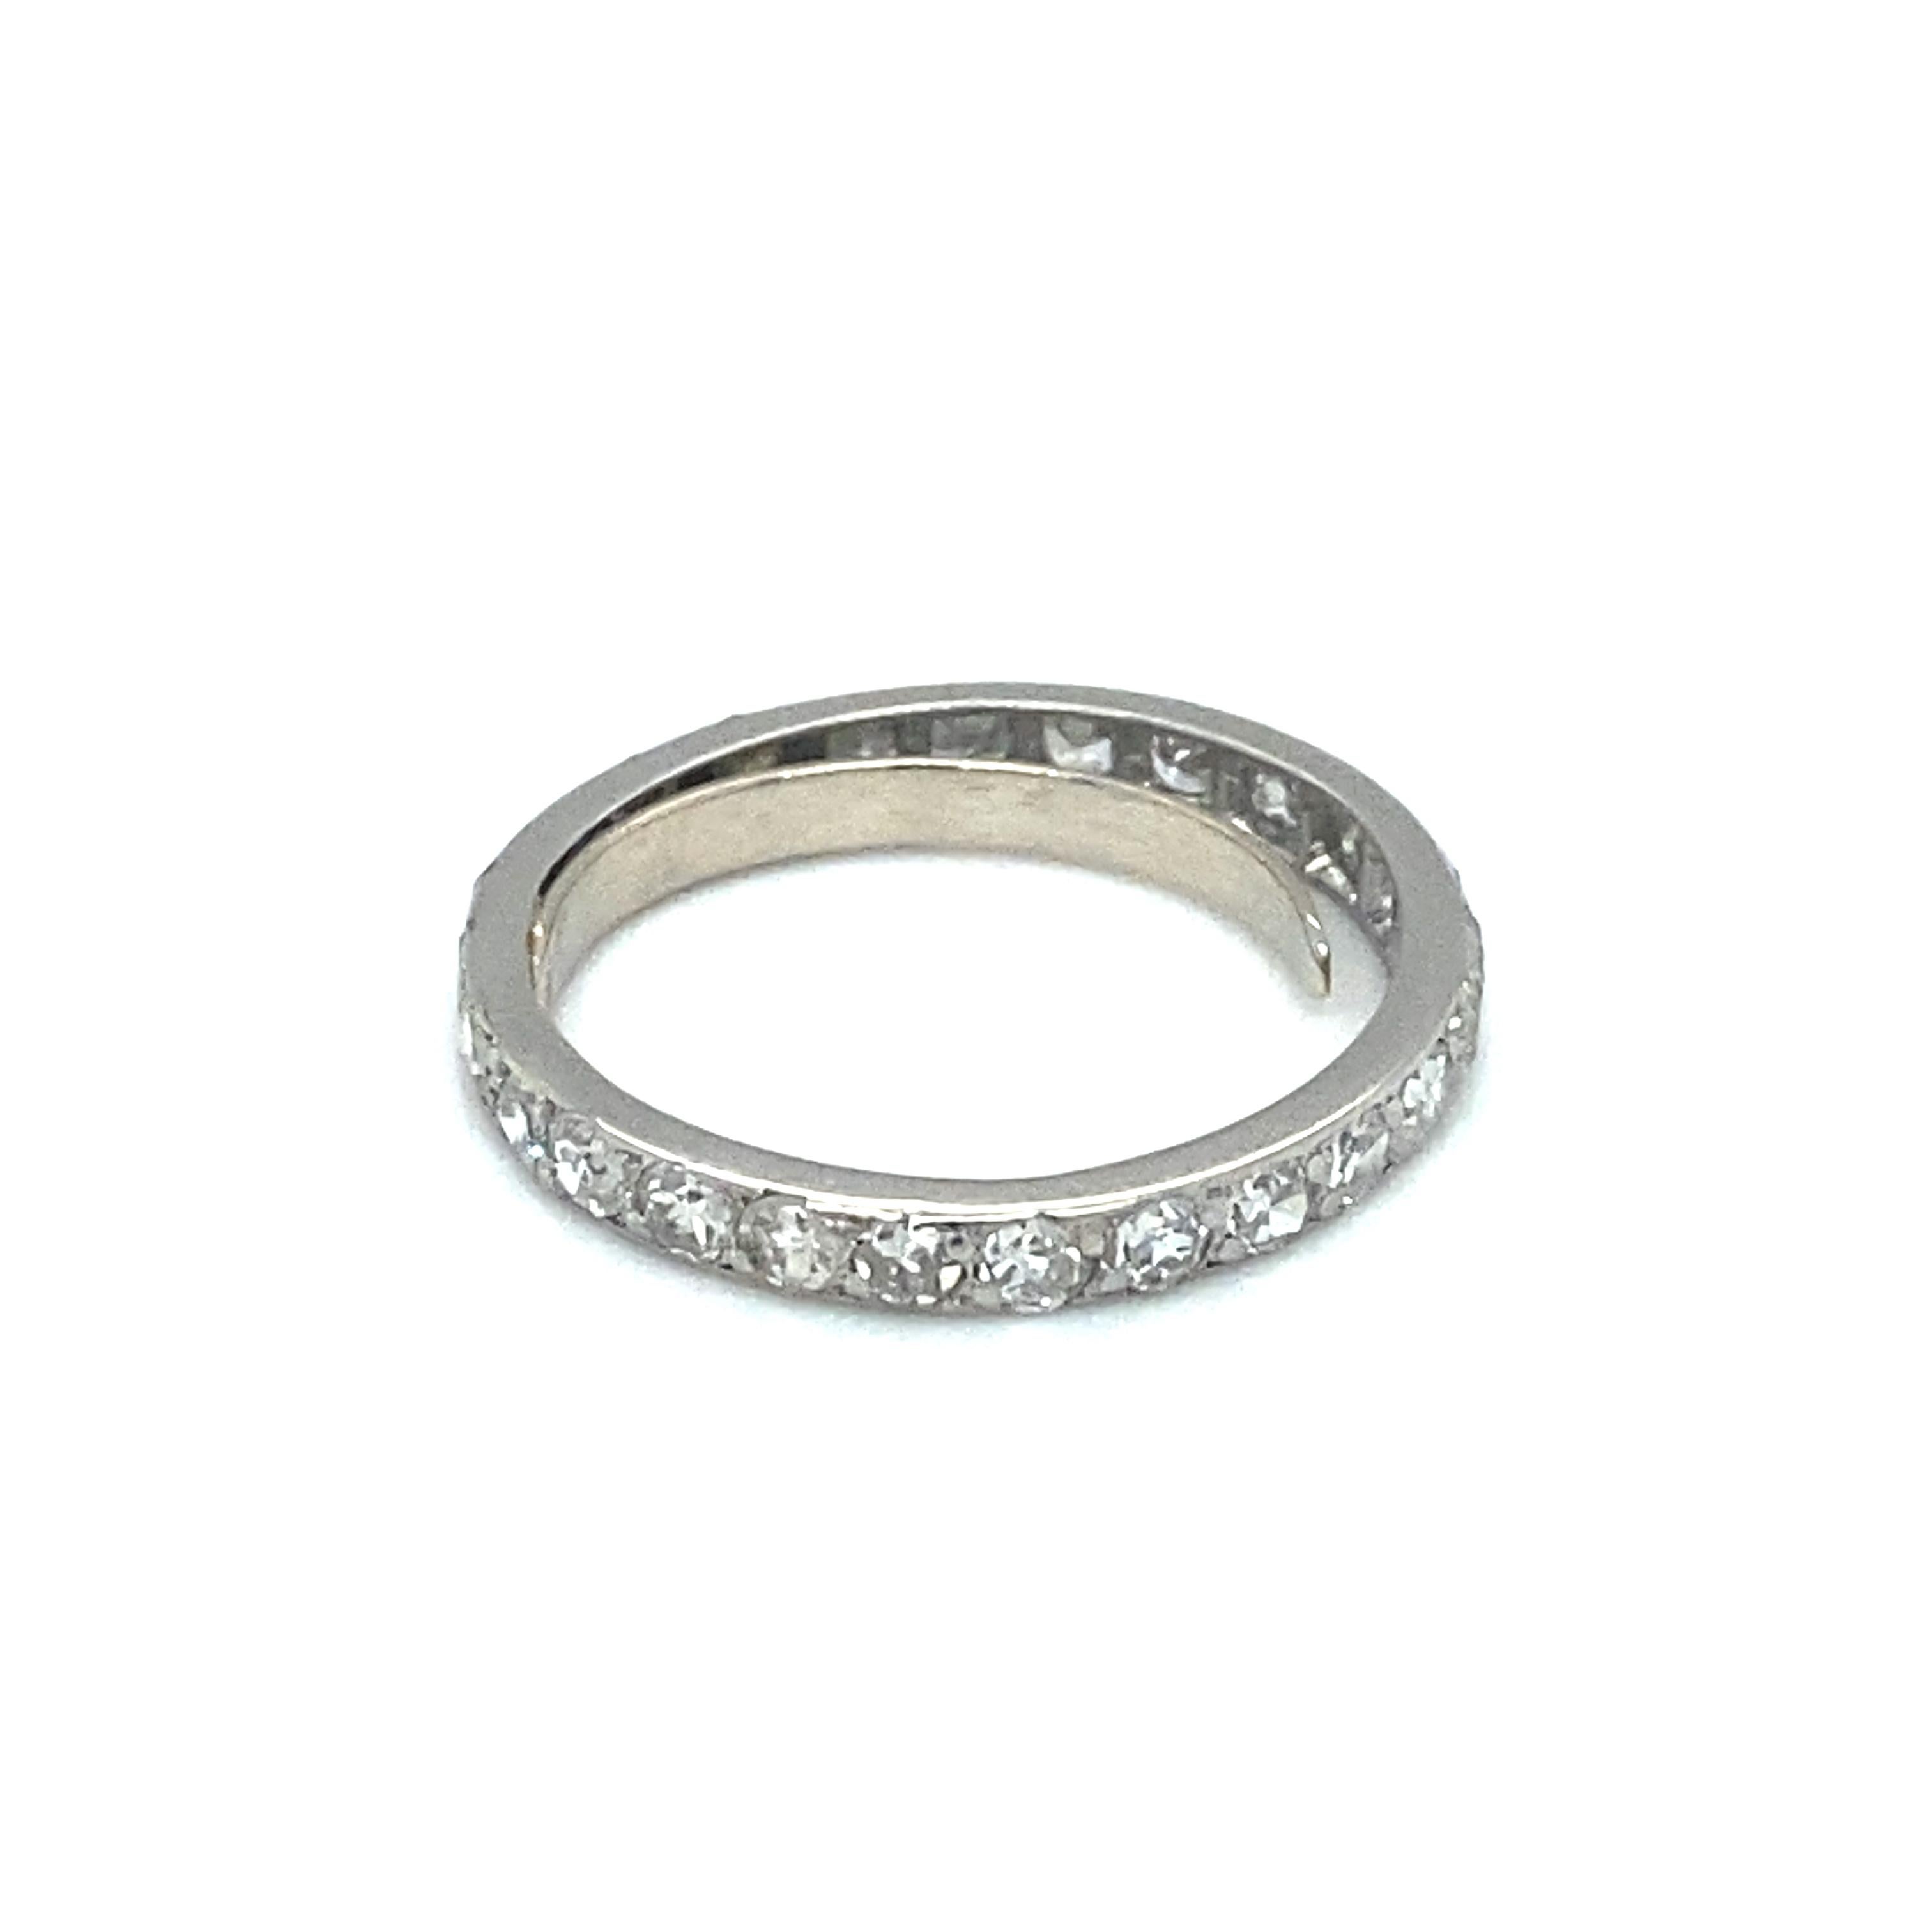 Artikel-Details: Dieser Ring ist mit funkelnden Diamanten im Einzelschliff von insgesamt 1 Karat besetzt. Er stammt aus den 1920er-Jahren, der Art-déco-Ära, und hat ein zeitloses Design für einen Ewigkeitsring. Auf Wunsch kann ein Federeinsatz zur